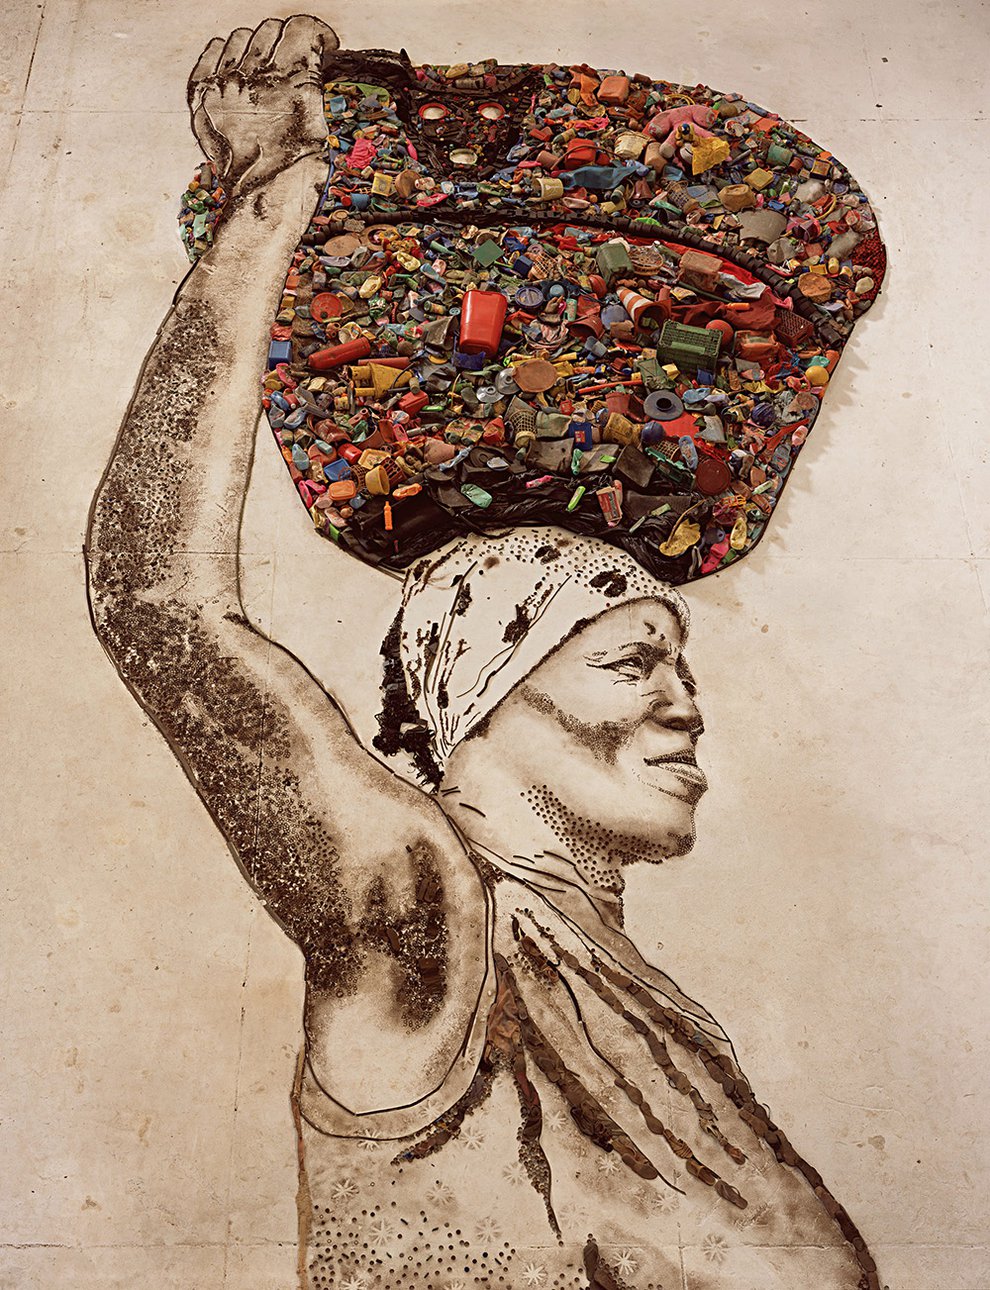 Серия «Картины из мусора» была сделана Виком Мунисом для фильма Люси Уокер «Свалка» в 2010 г. Фильм отвечает на вопрос, может ли современный художник непосредственно влиять на судьбы людей. Фото: courtesy of the Artist